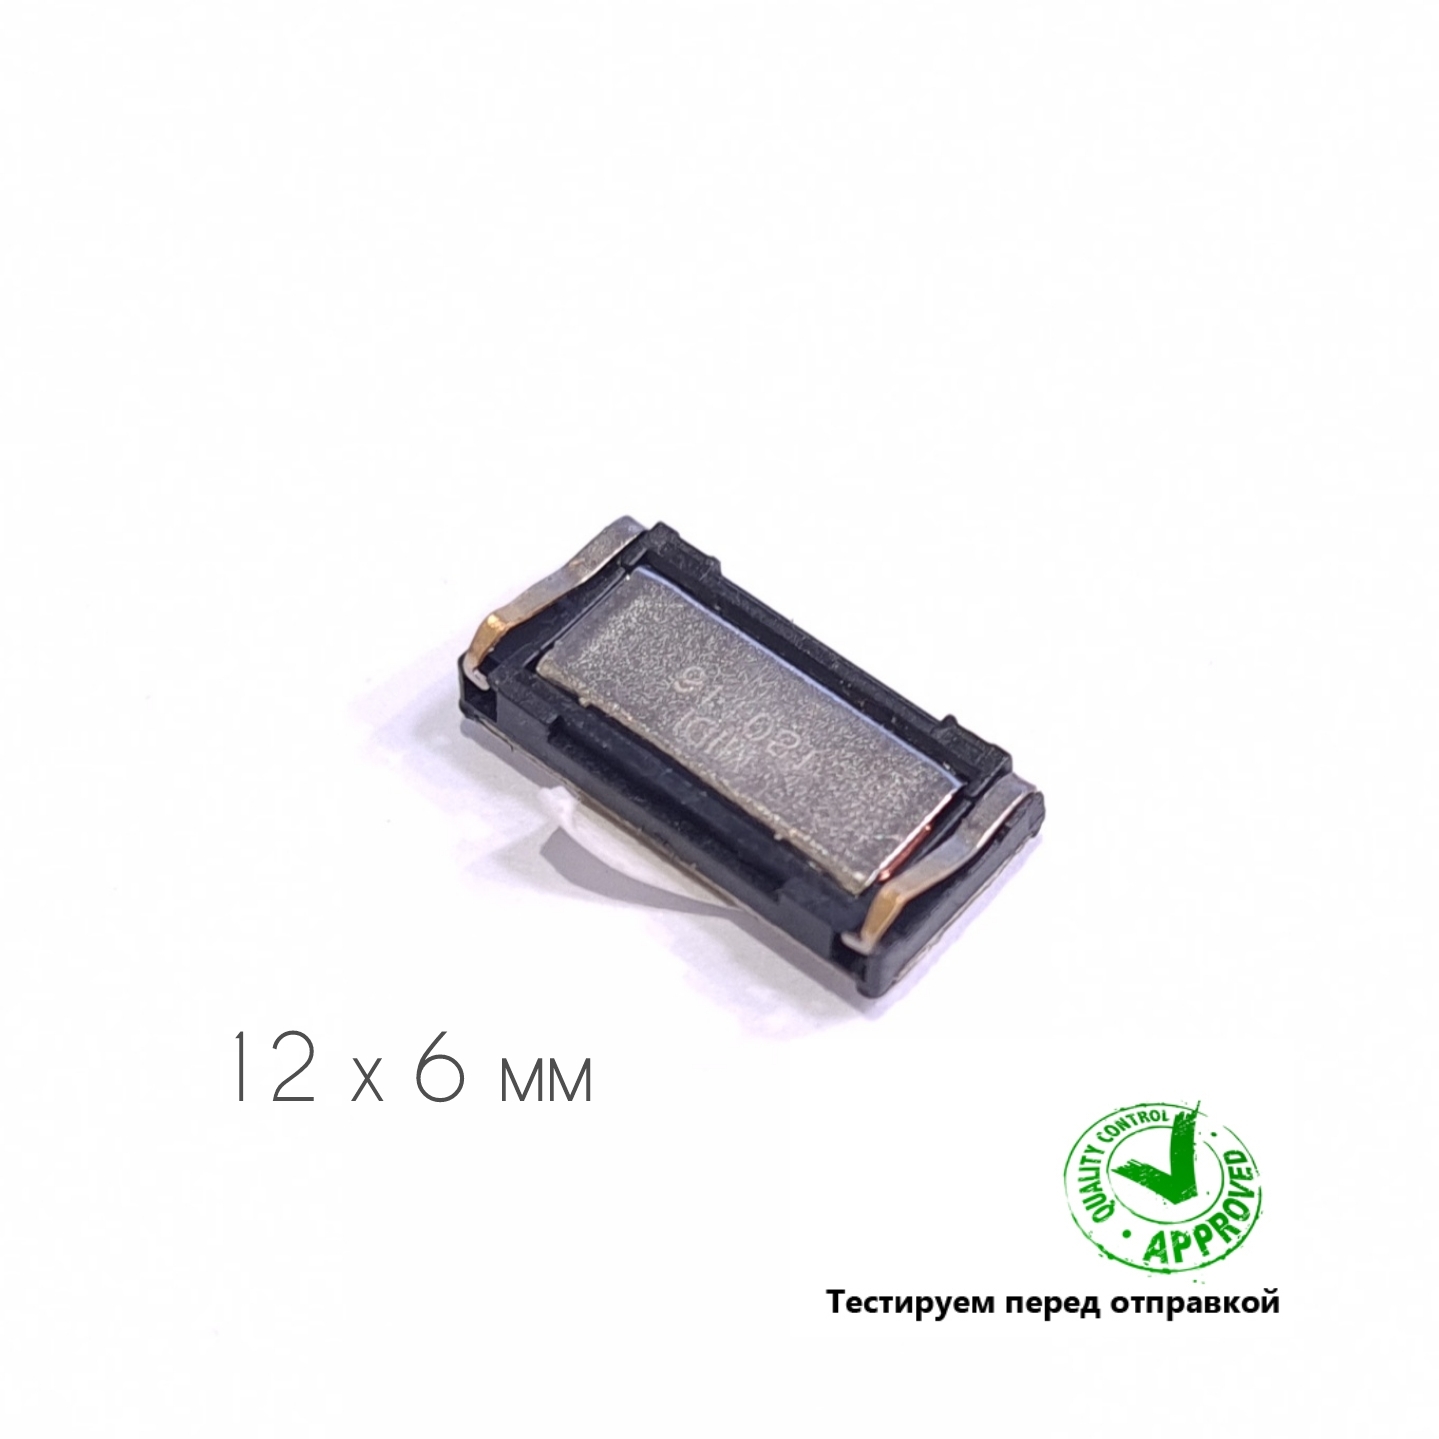 Динамик разговорный Xiaomi Redmi 5, 12мм